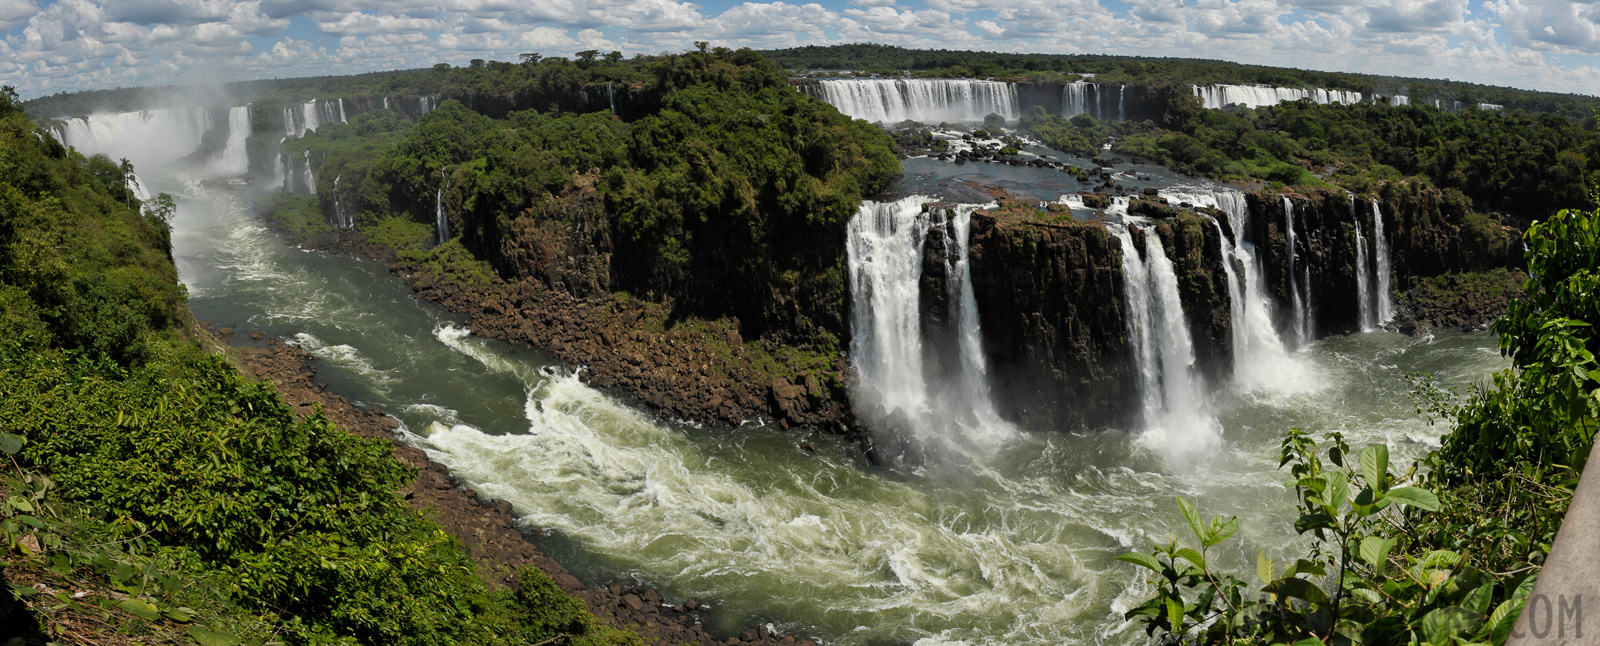 Cataratas del Iguazu [28 mm, 1/500 Sek. bei f / 16, ISO 400]